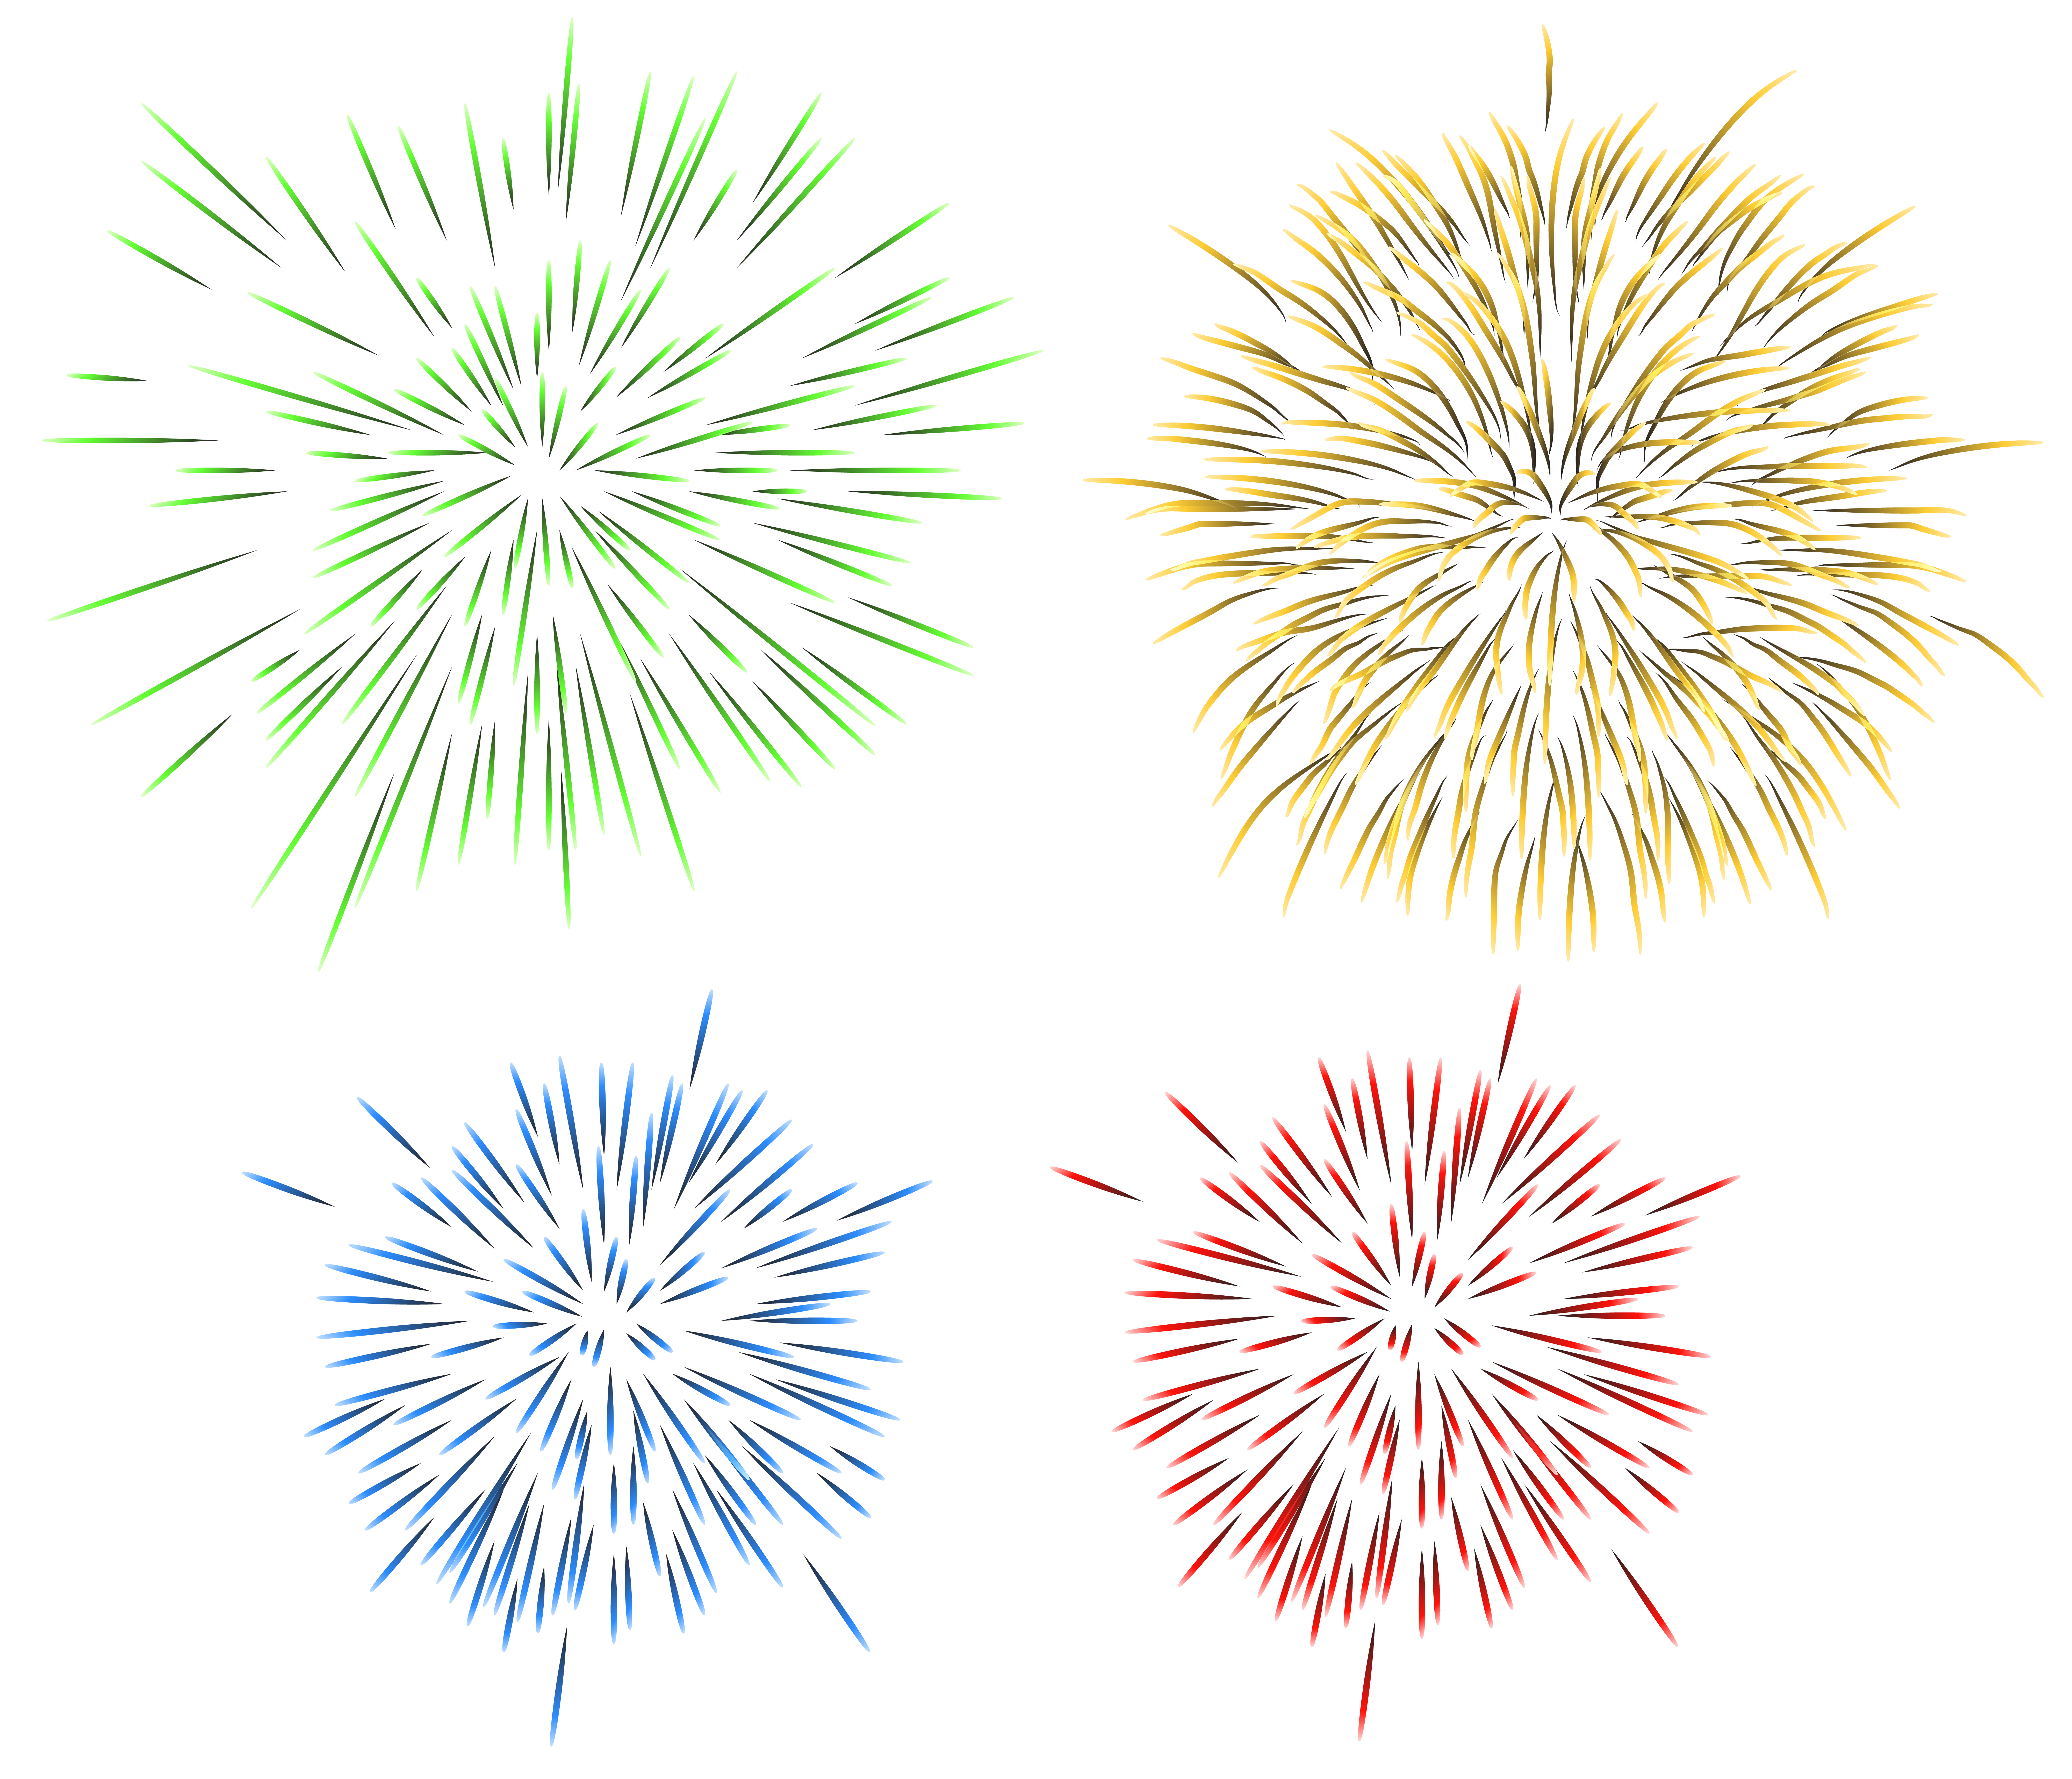 firecracker clipart new years eve firework